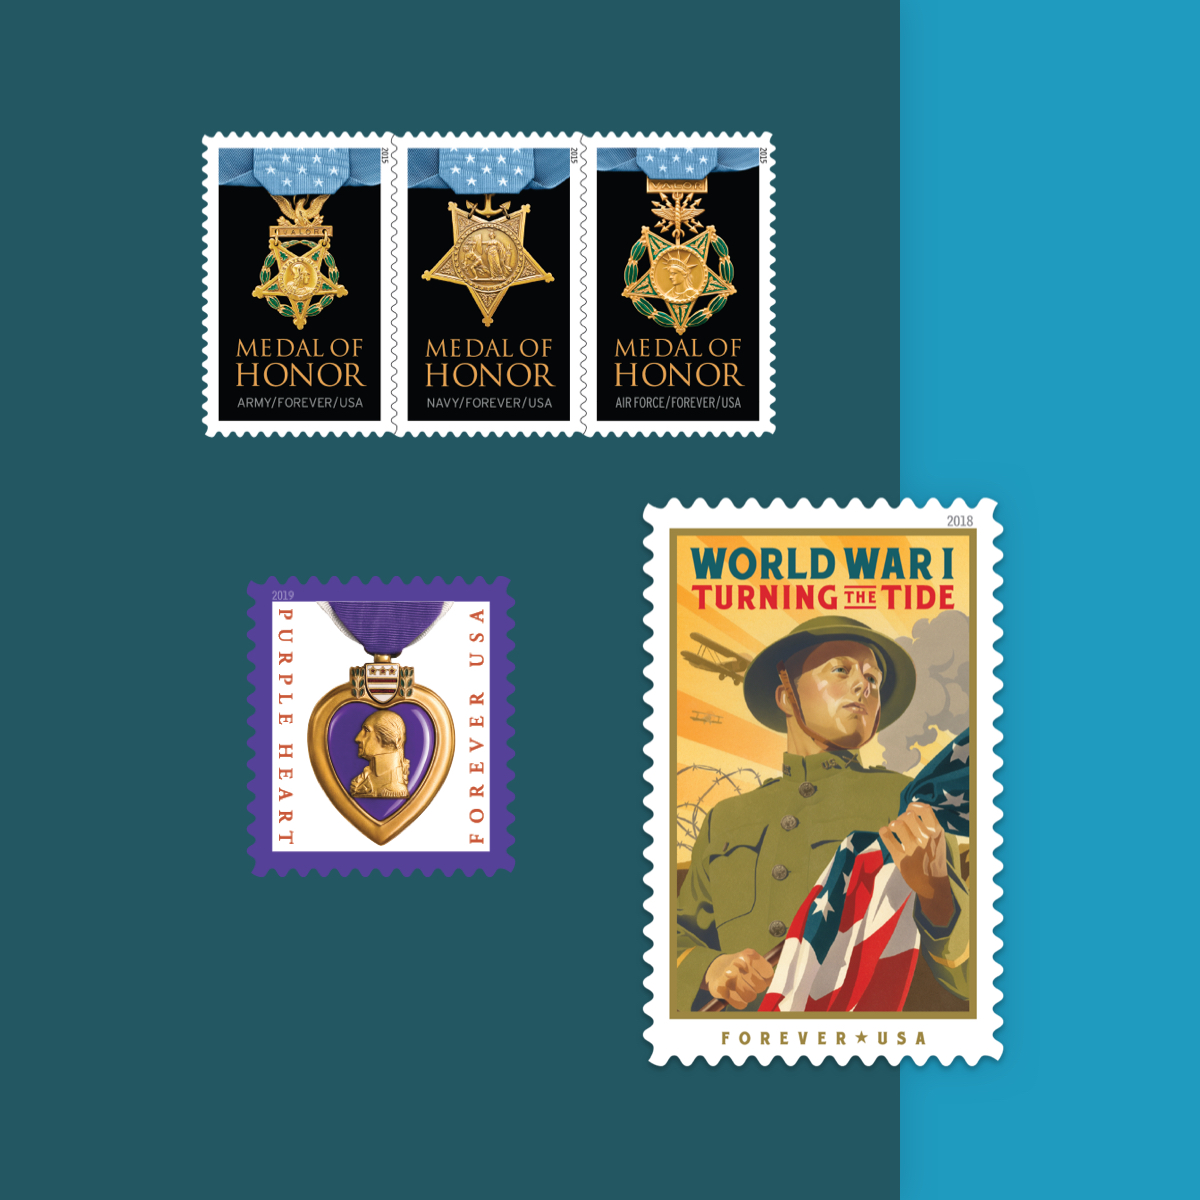 USPS Stamp Information Email Program